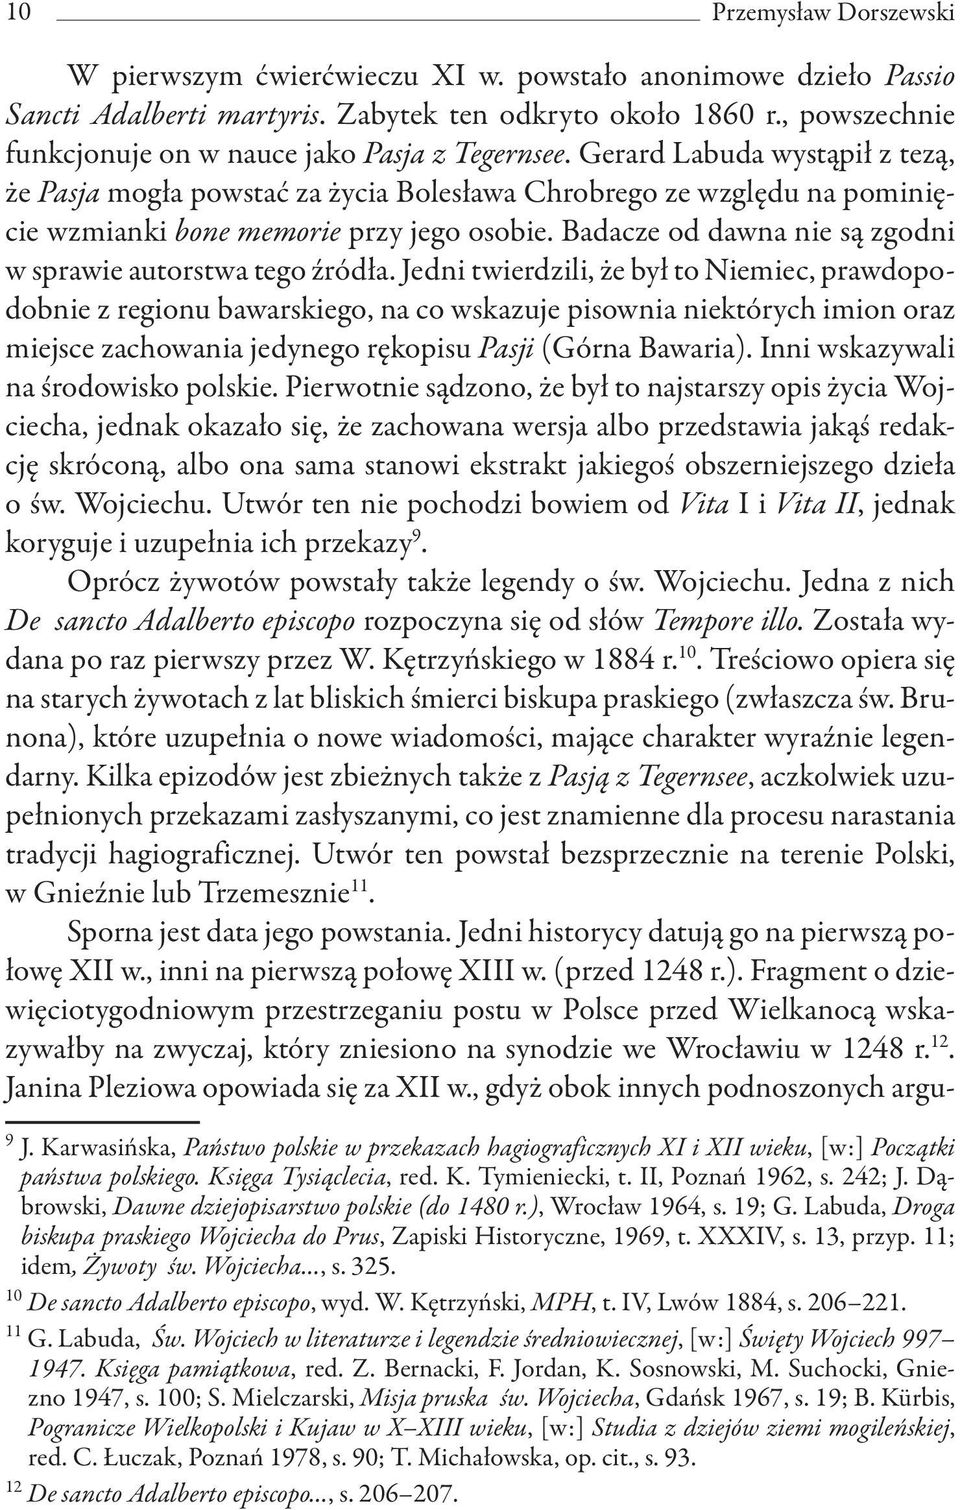 Gerard Labuda wystąpił z tezą, że Pasja mogła powstać za życia Bolesława Chrobrego ze względu na pominięcie wzmianki bone memorie przy jego osobie.